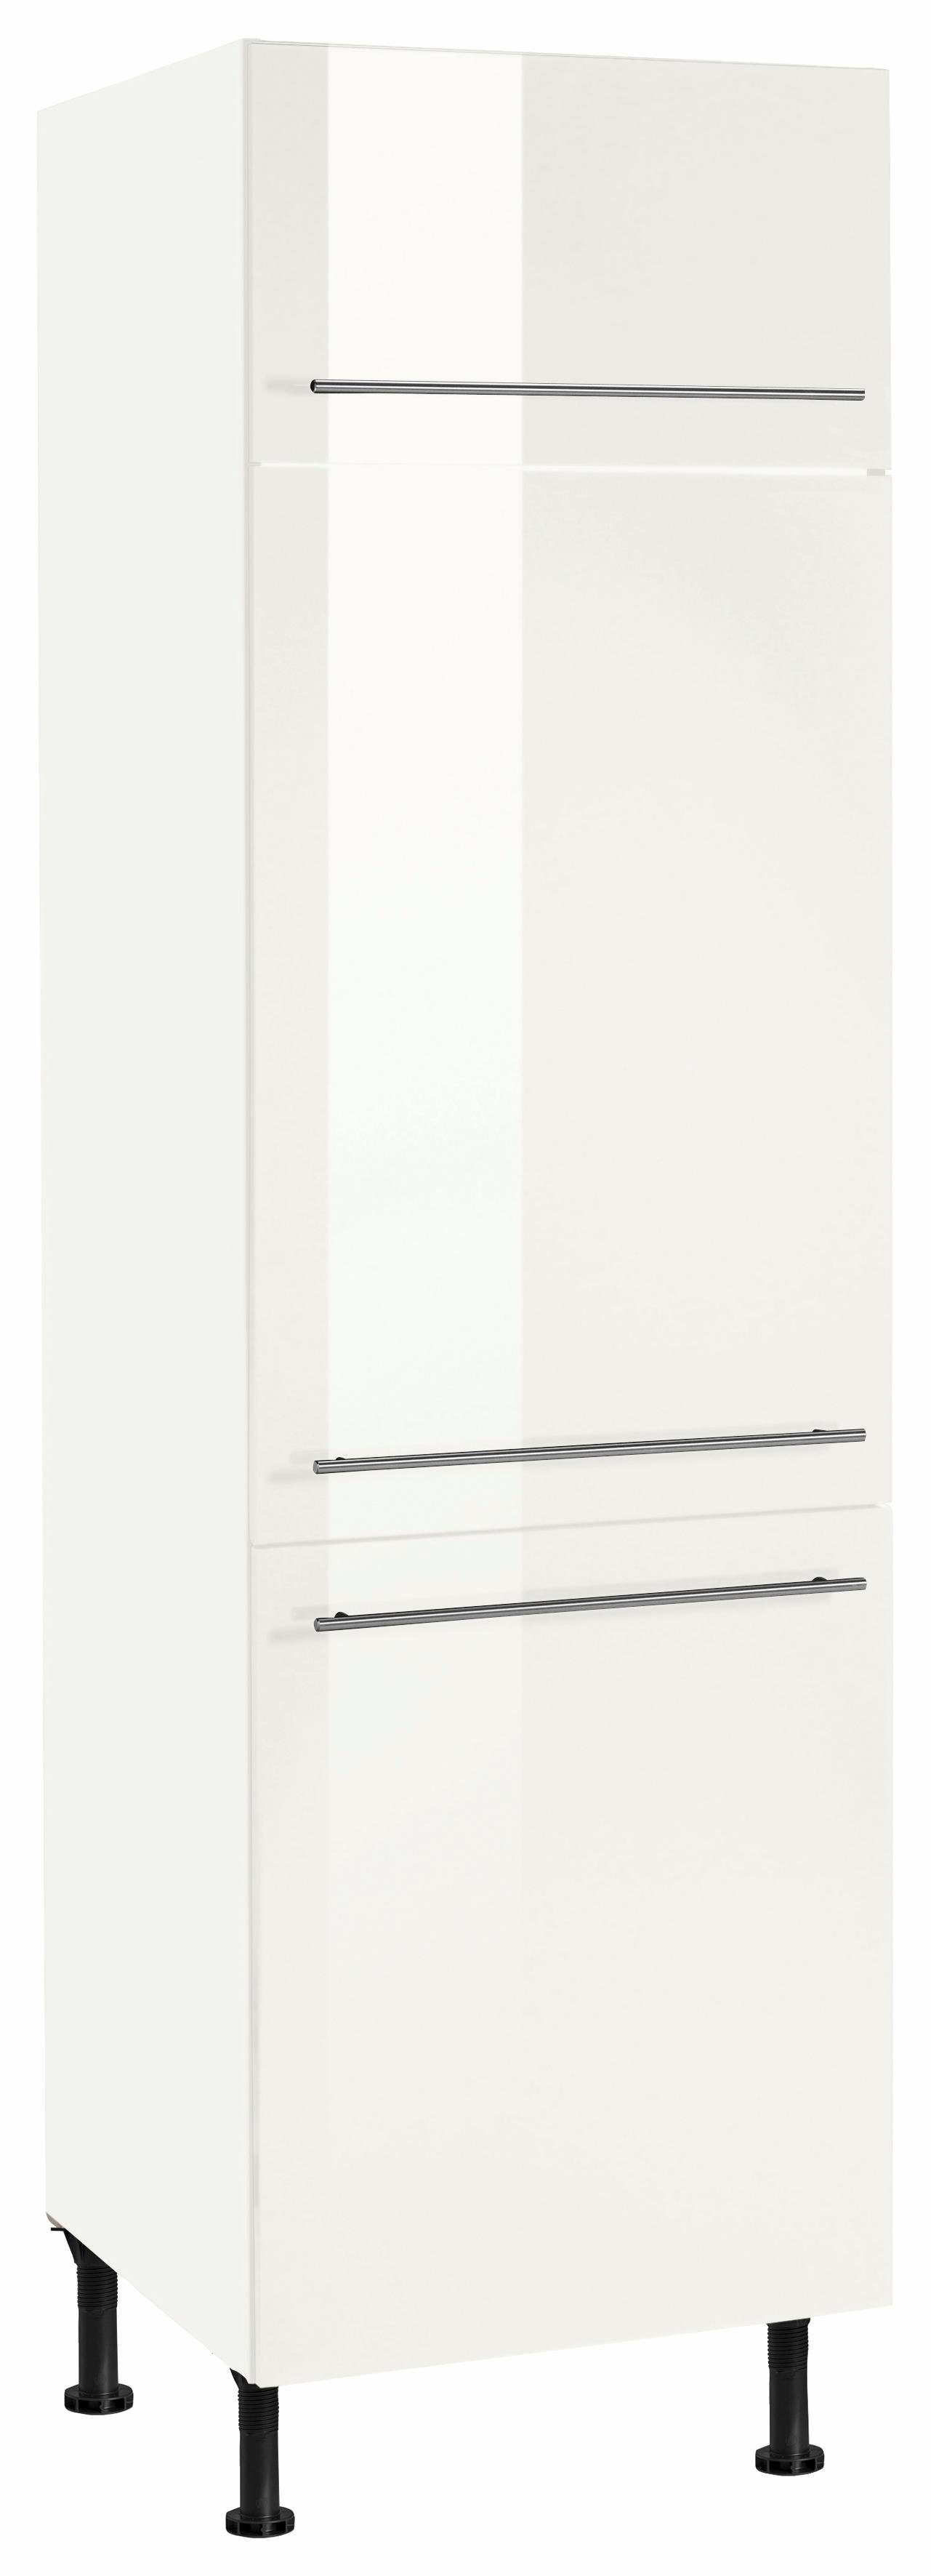 OPTIFIT Kühlumbauschrank Bern 60 cm breit, 212 cm hoch, mit höhenverstellbaren Stellfüßen weiß Hochglanz/weiß | weiß